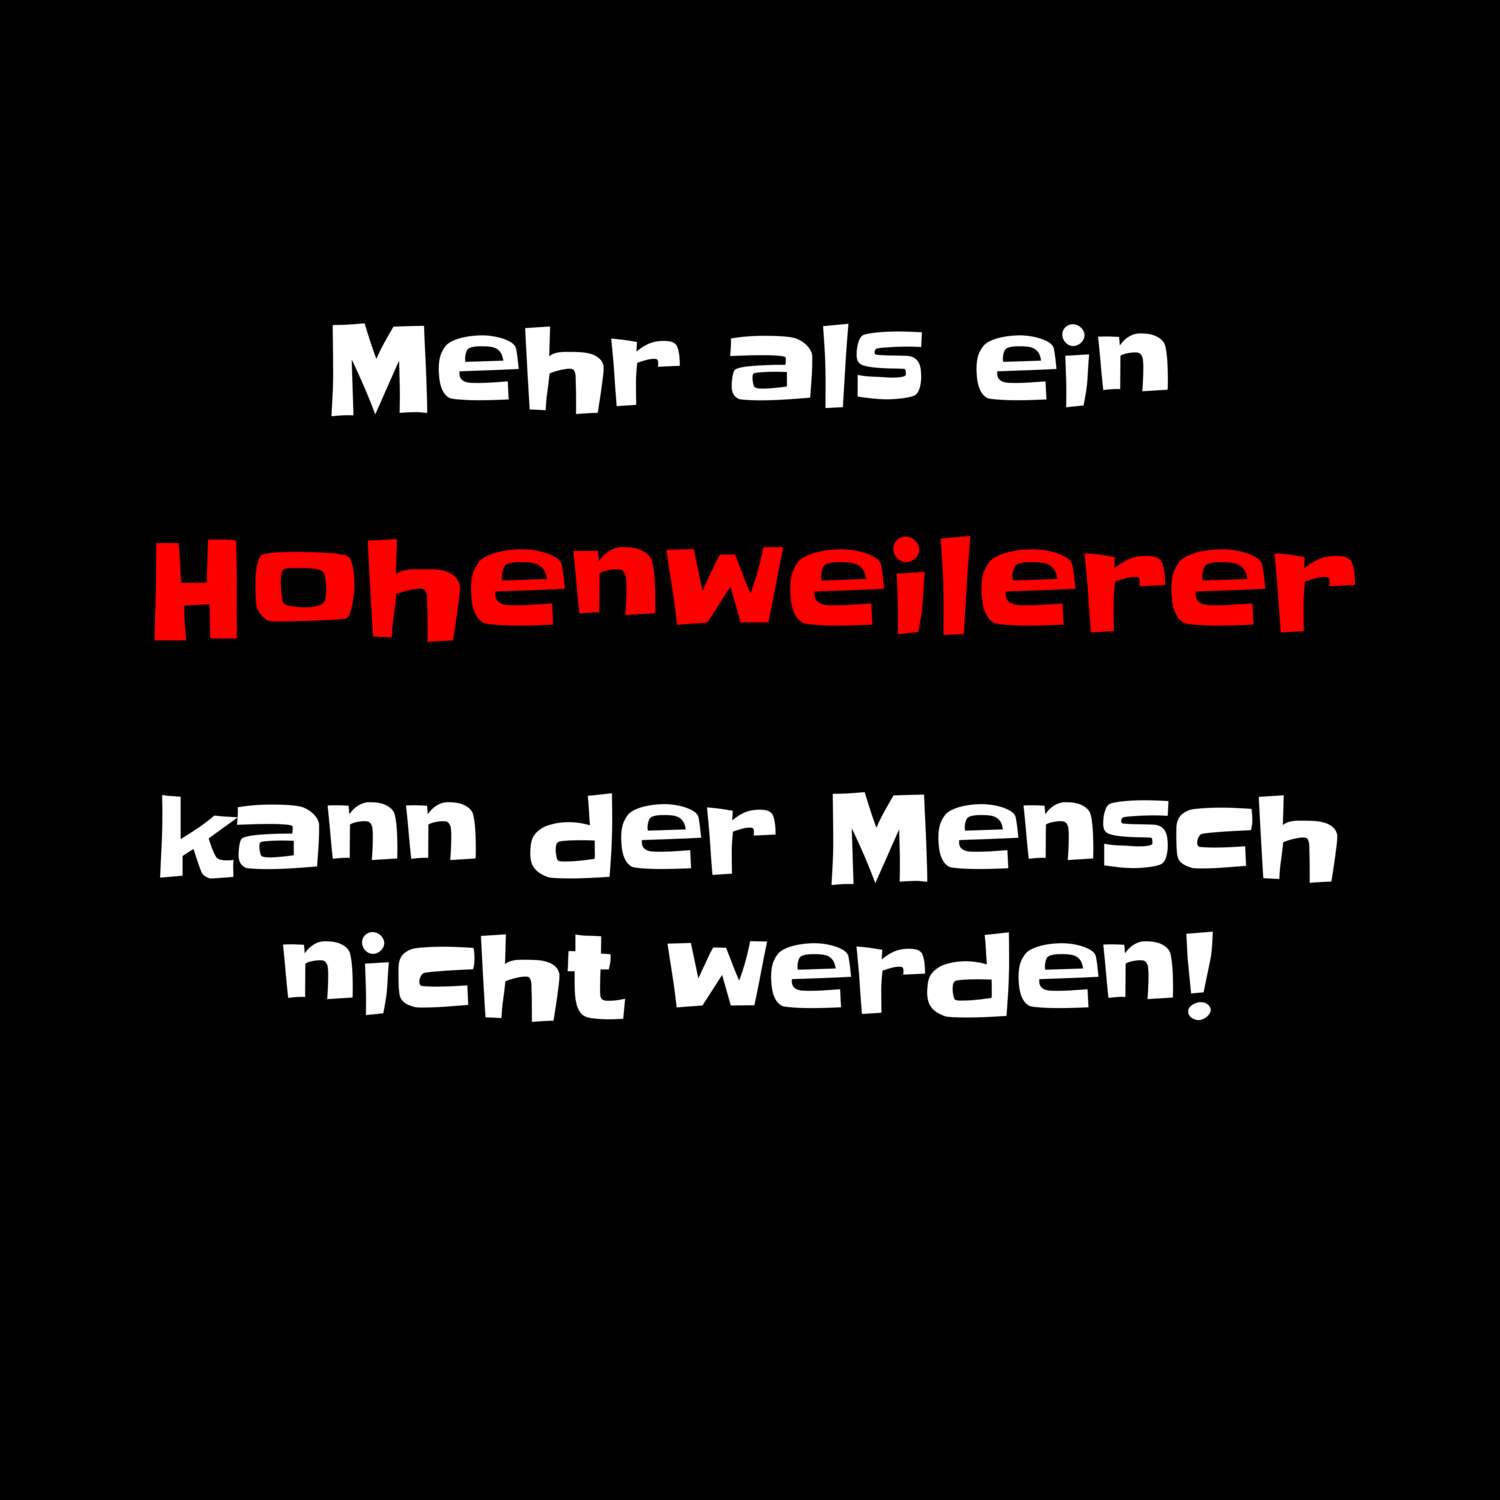 Hohenweiler T-Shirt »Mehr als ein«